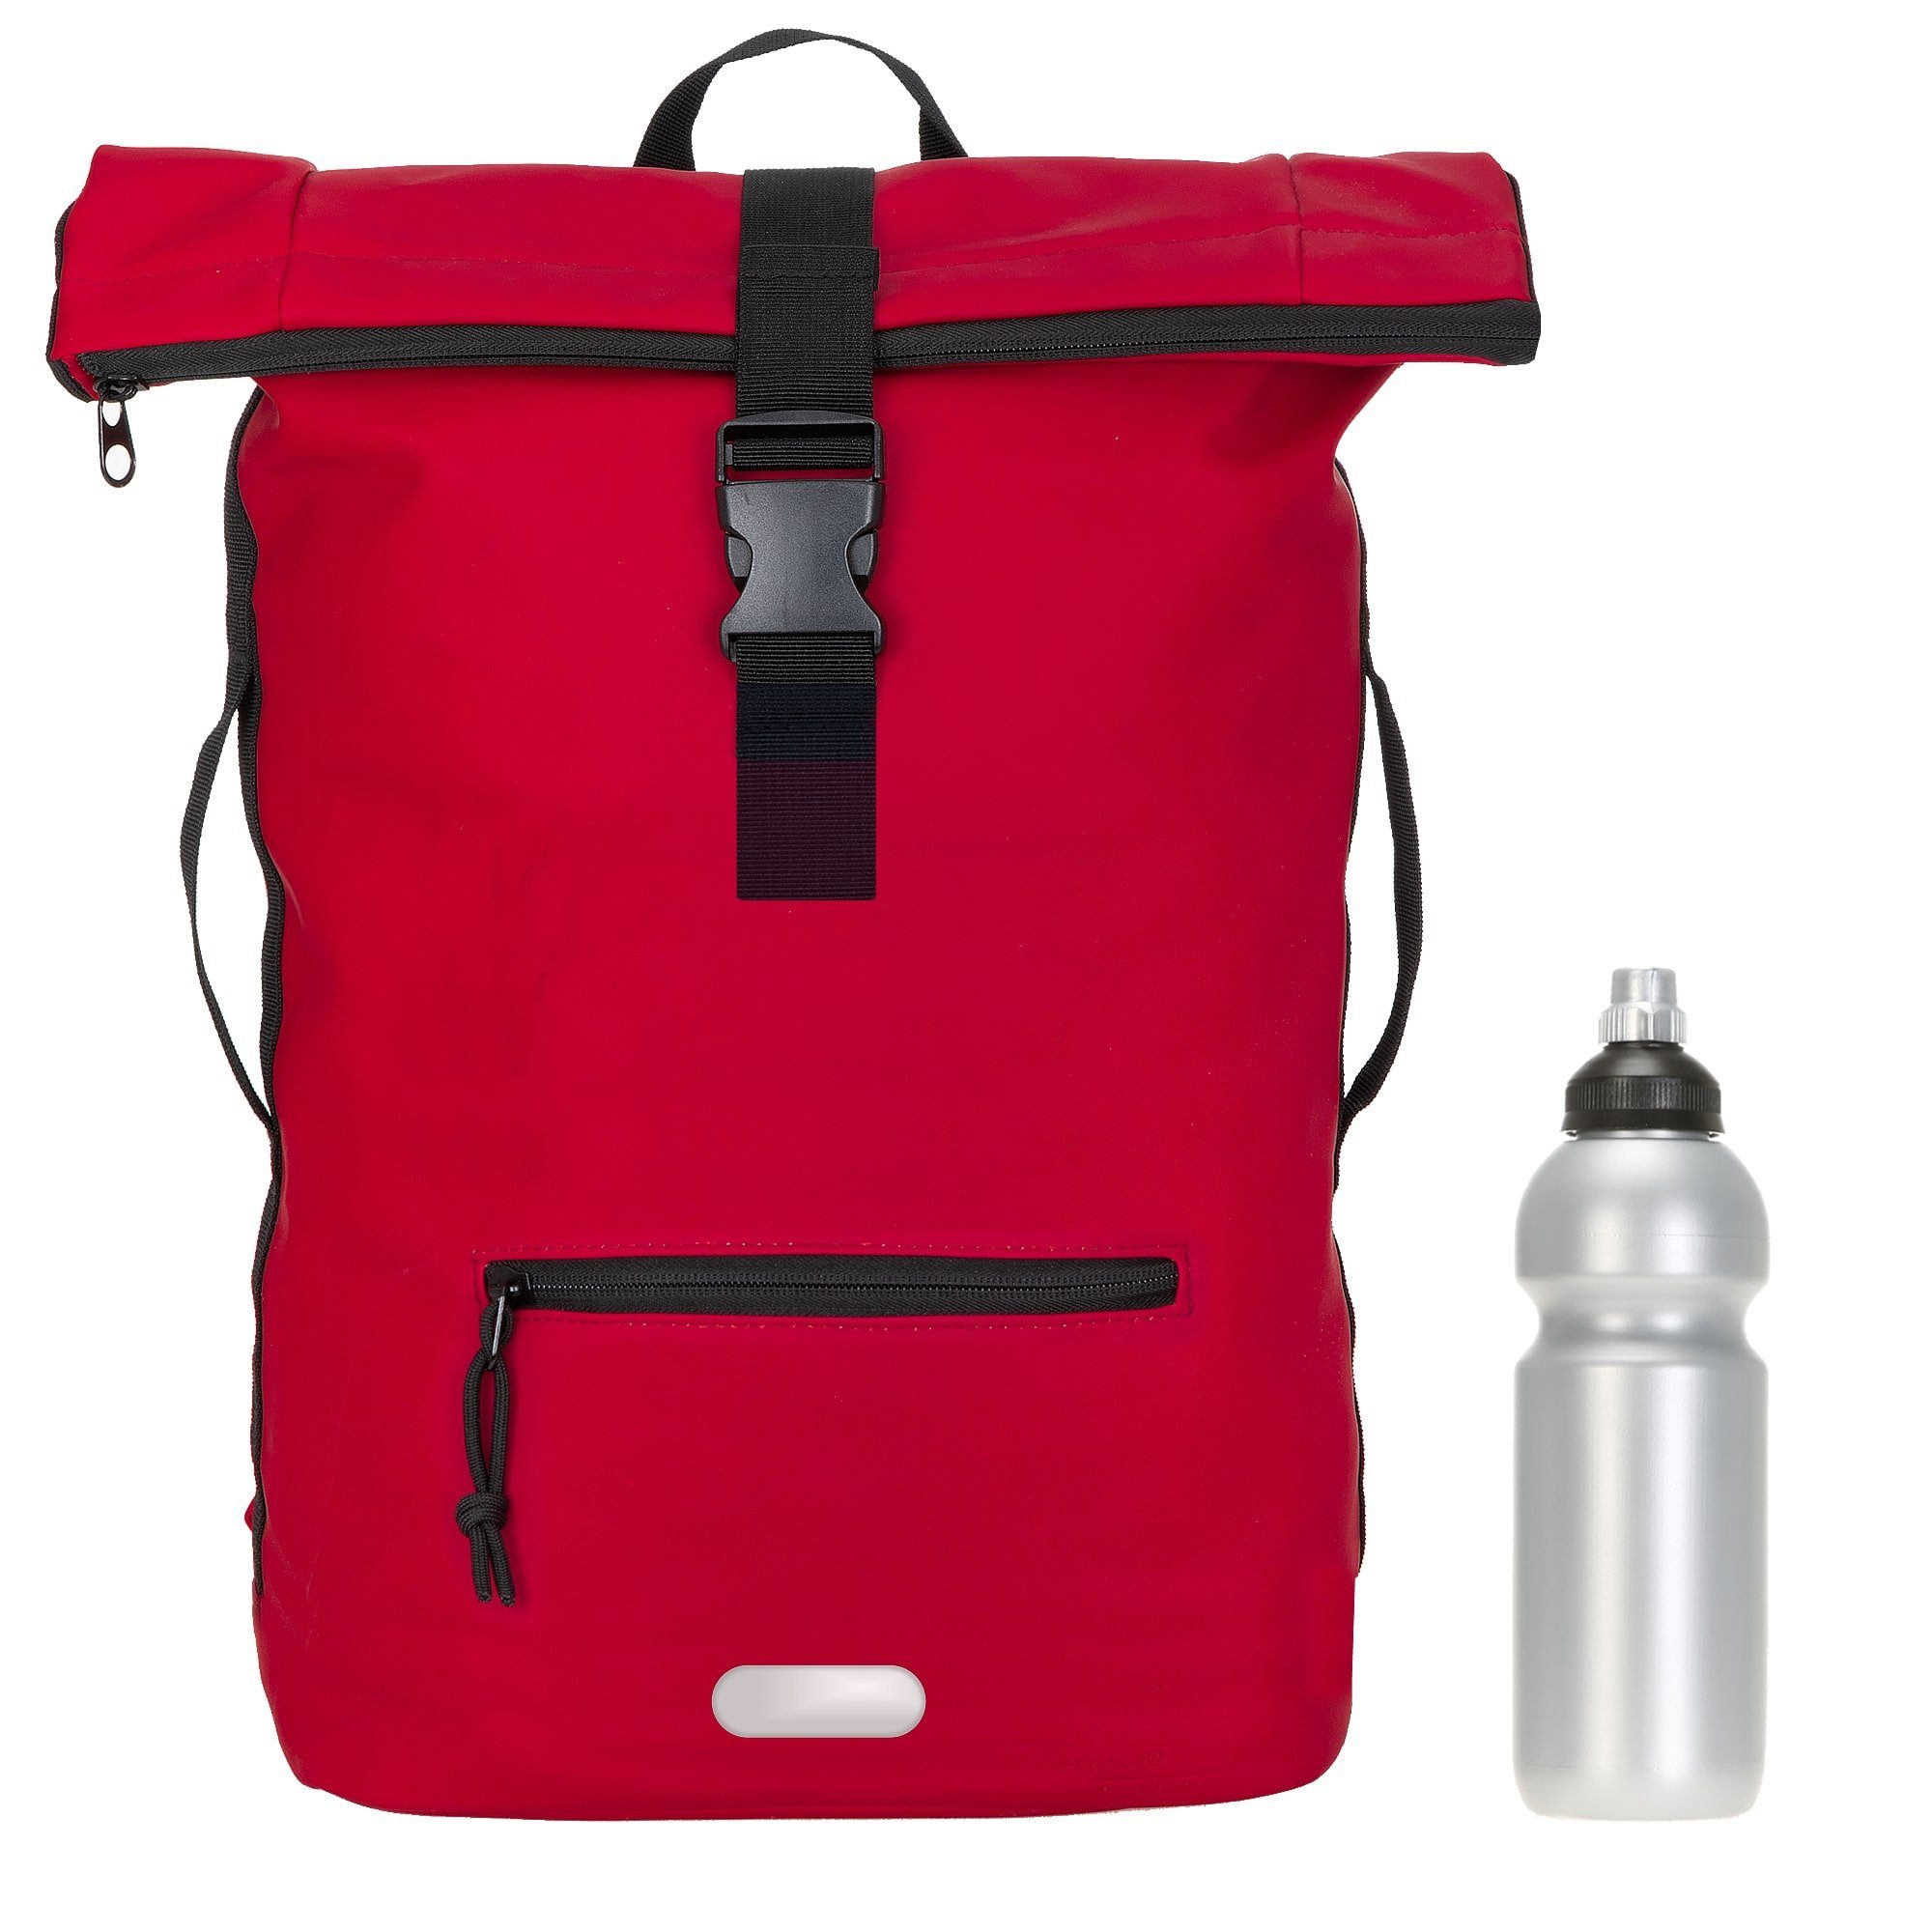 ELEPHANT Freizeitrucksack Time Bag aus Plane, Rucksack Laptoprucksack Daypack wasserabweisend + Trinkflasche